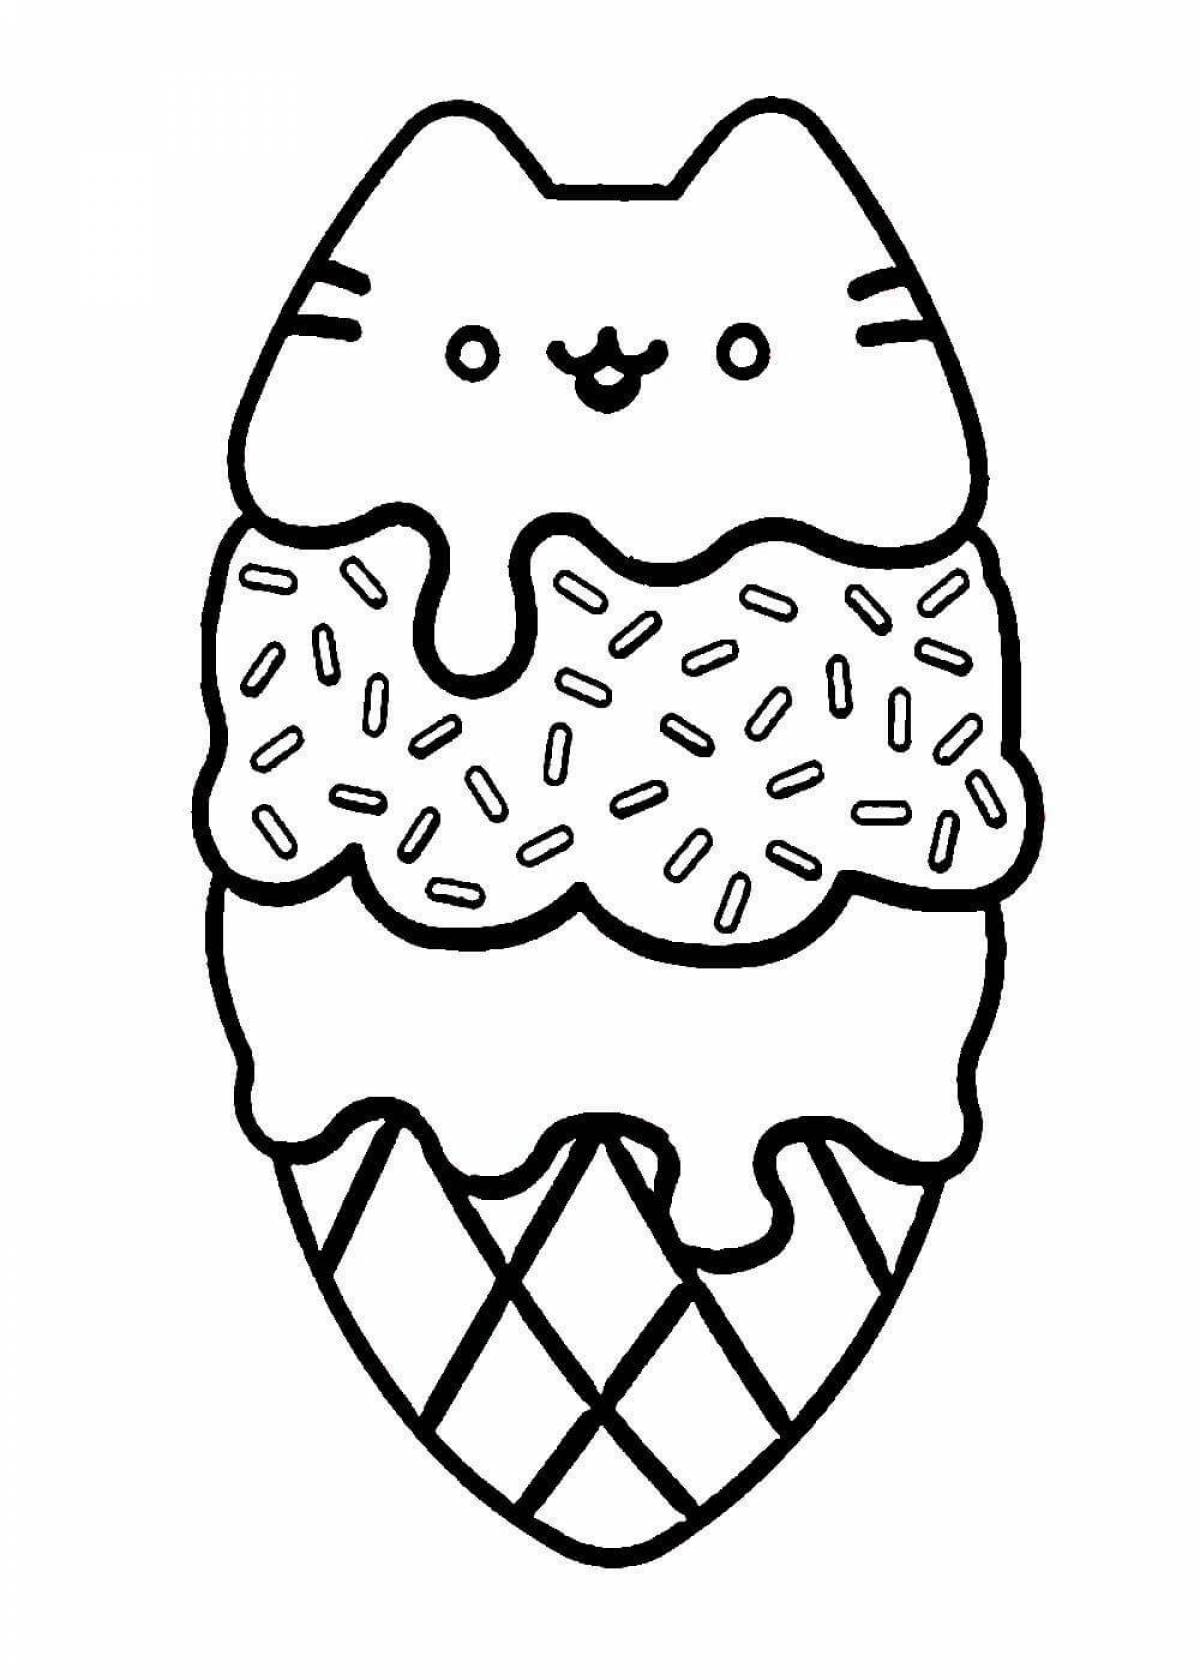 Ice cream cat #5